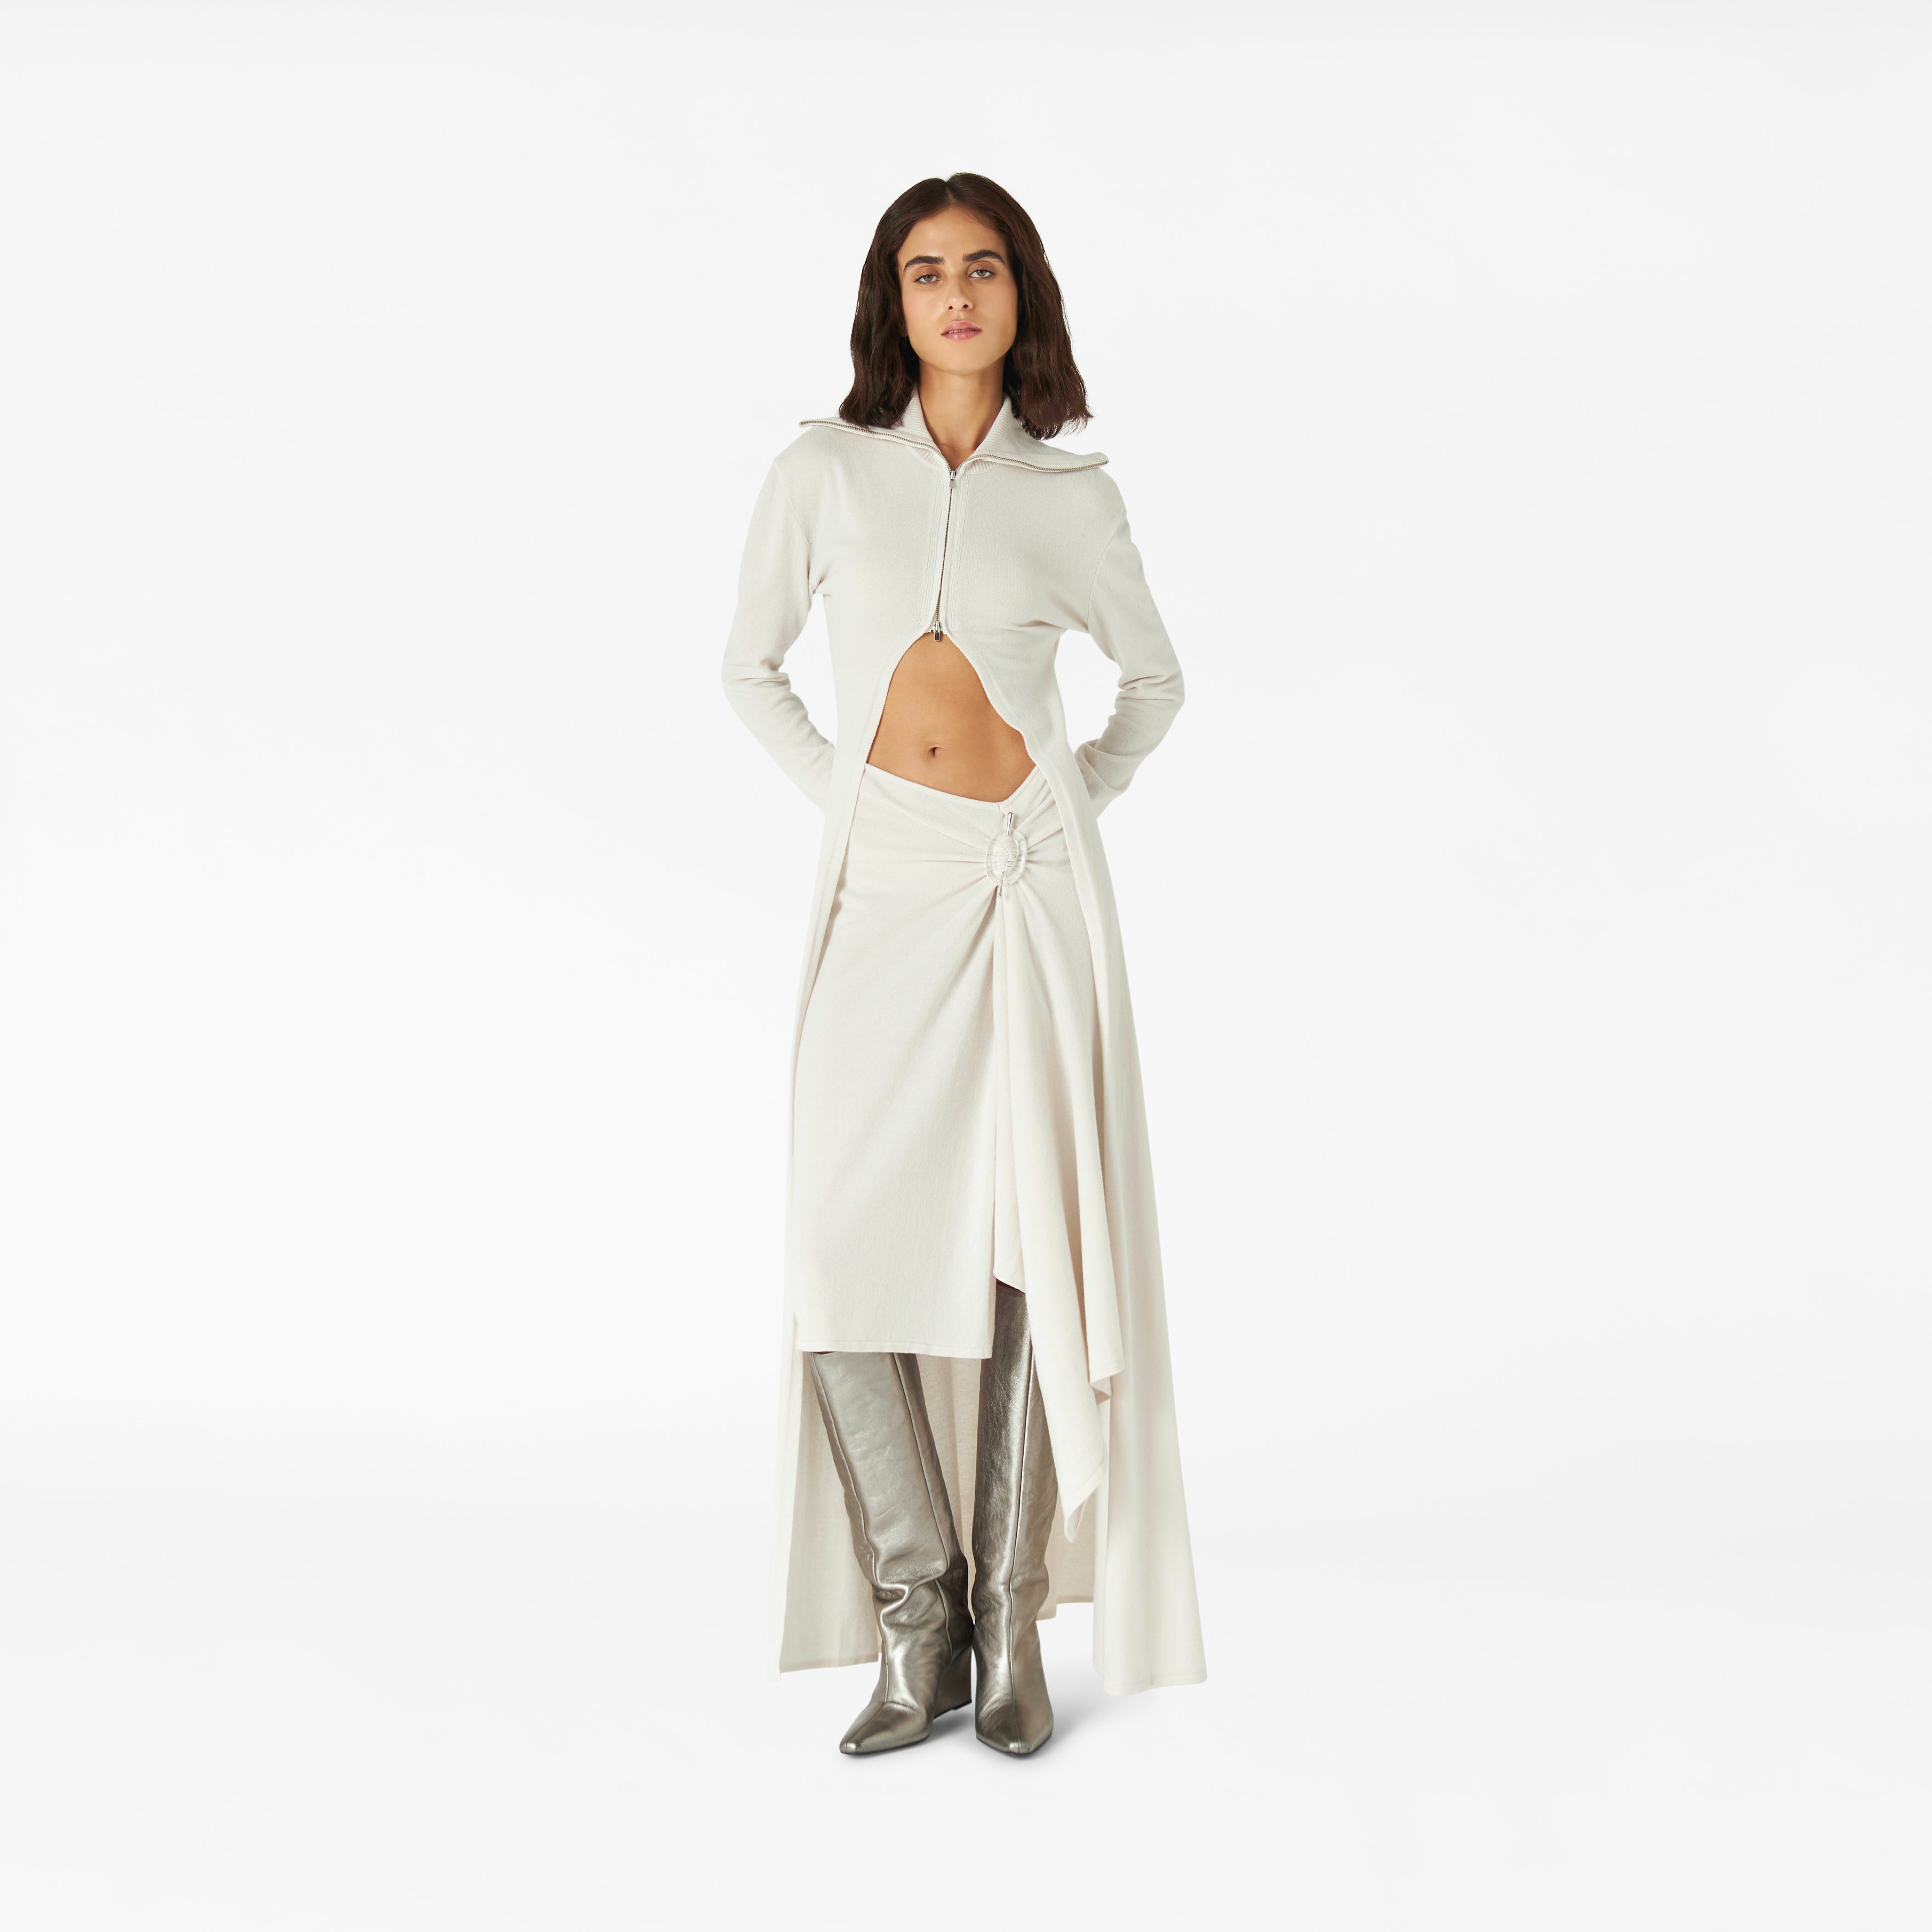 Healing Crystal Skirt in winter white | Lara Chamandi